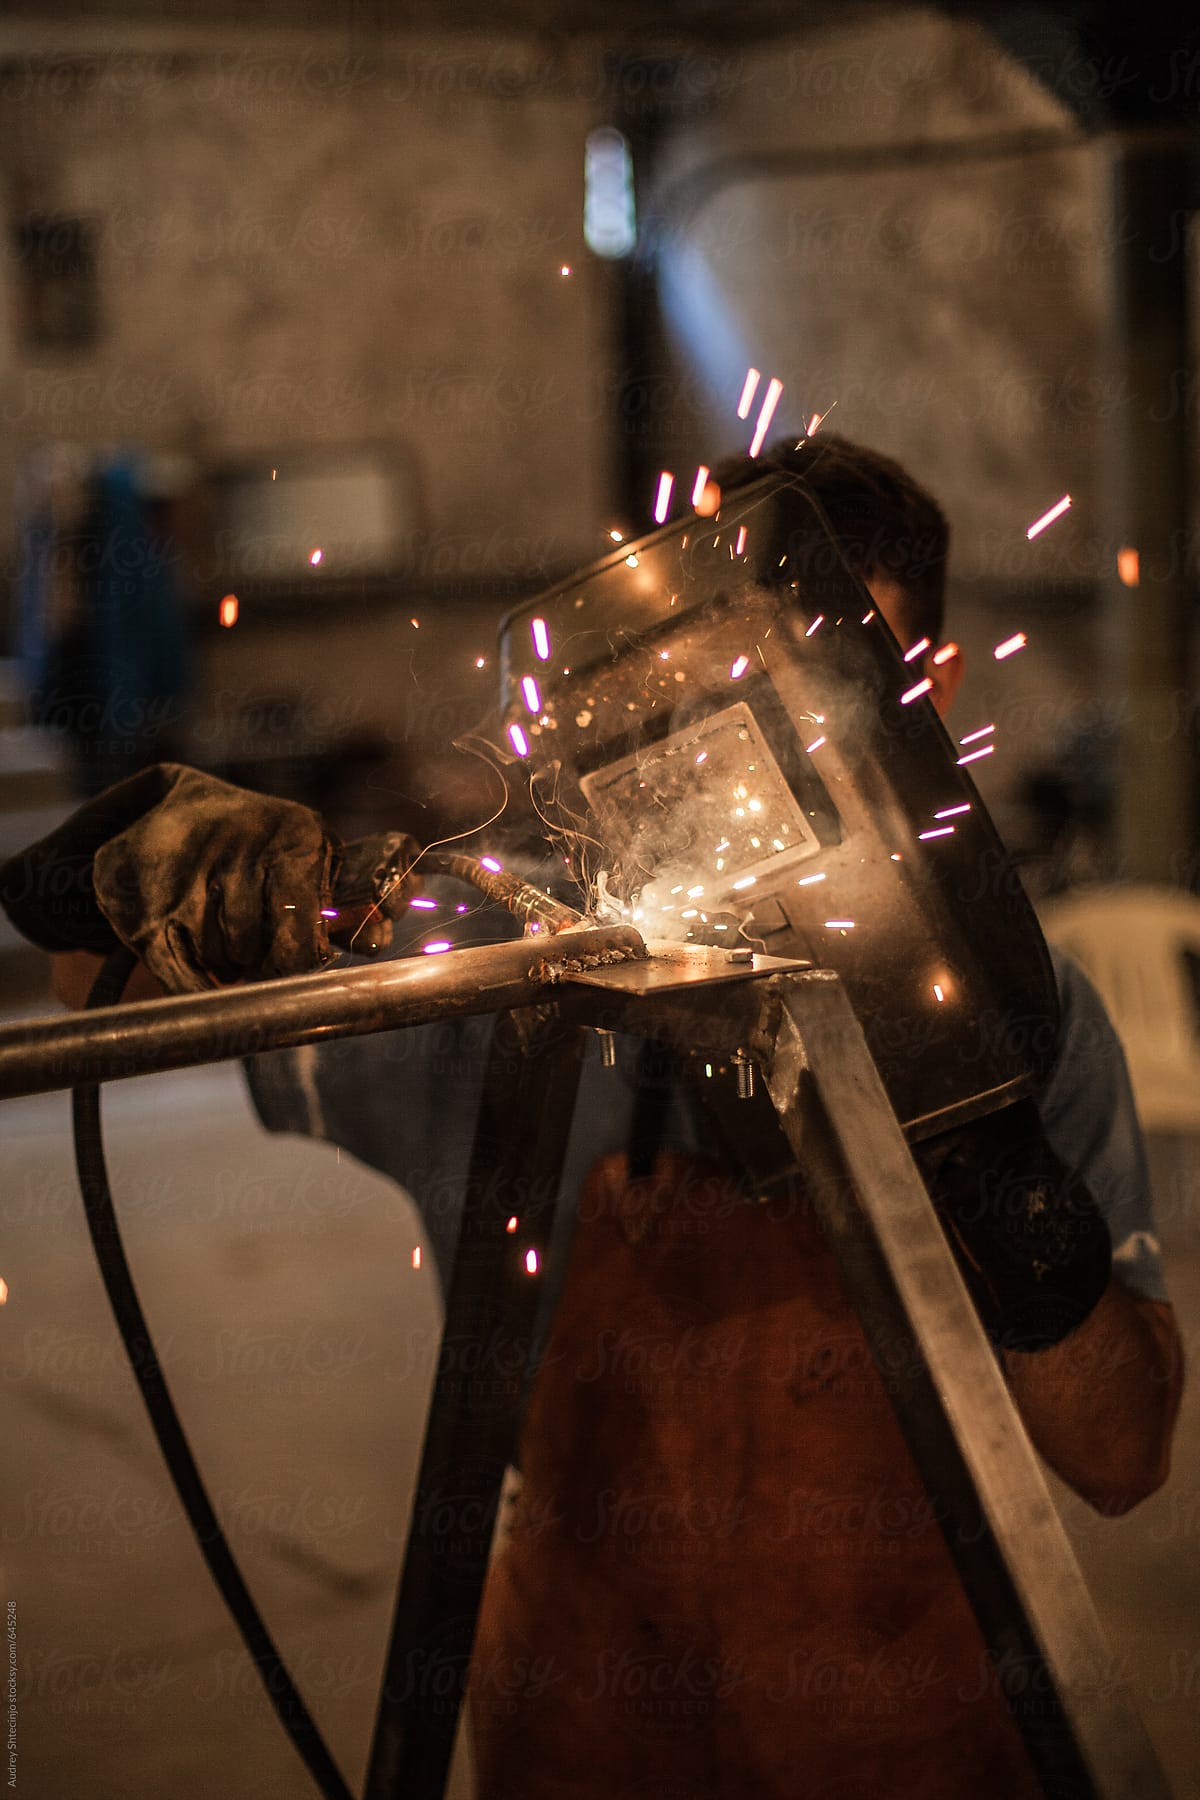 Man welding in his workshop.